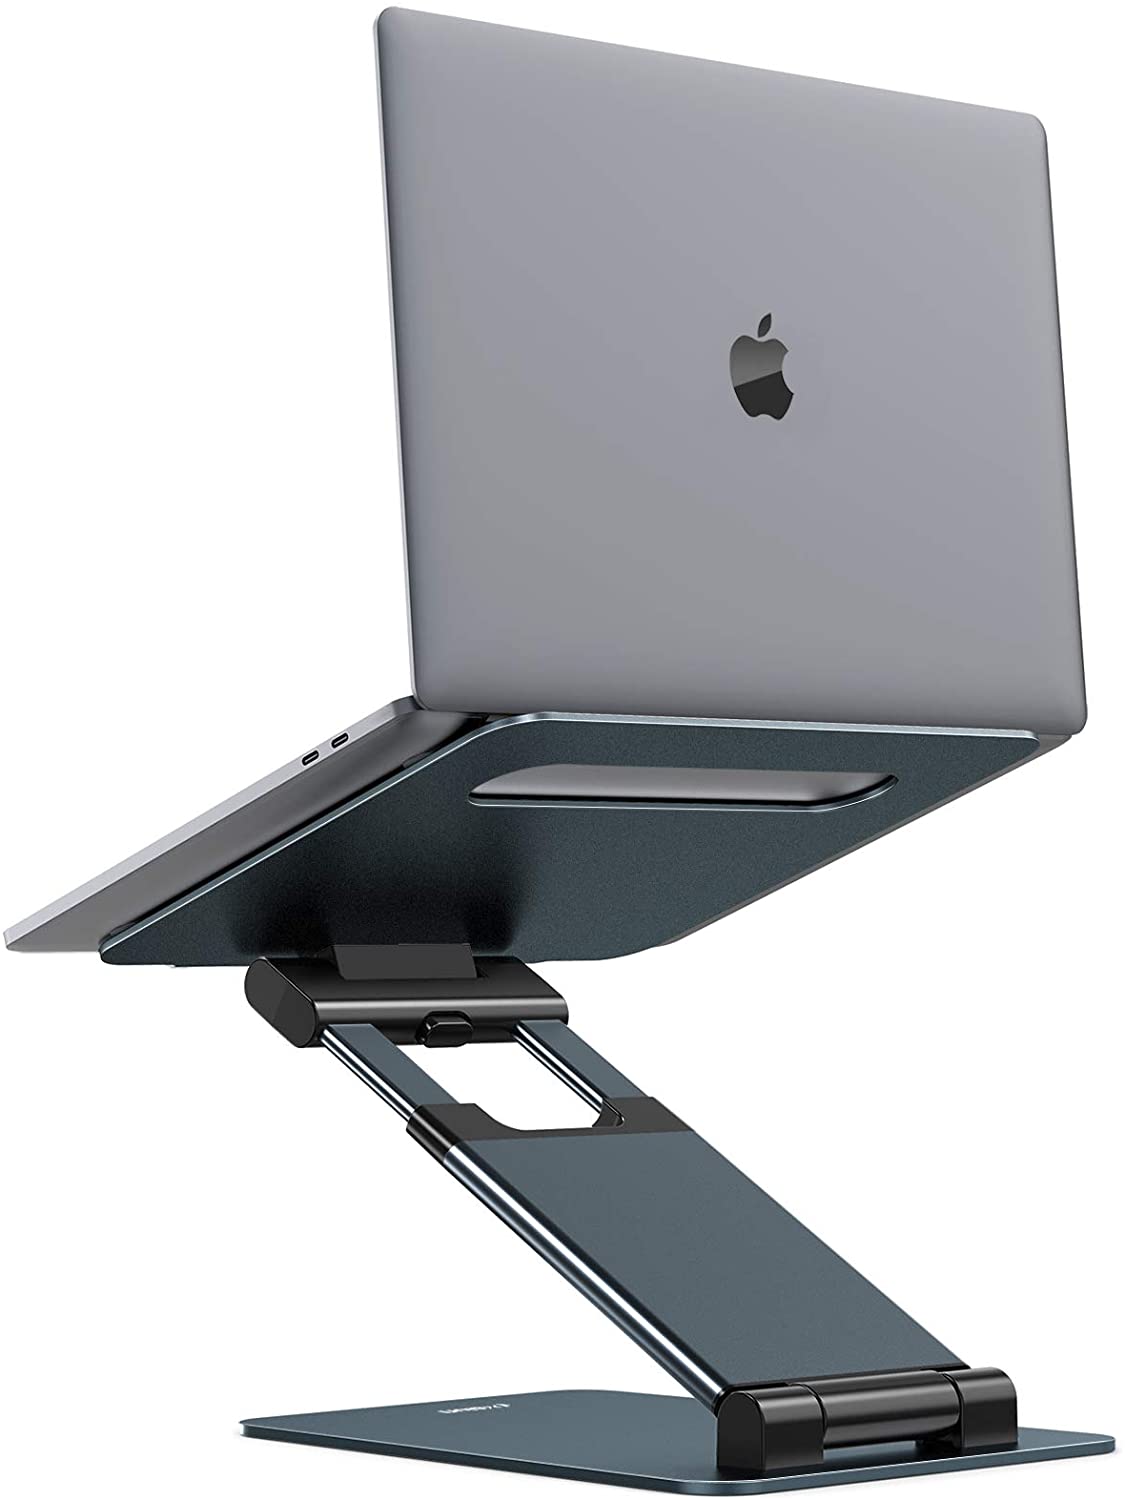 Support pour ordinateur portable assis-debout, Hauteur ajustable de 2,1 à  21 - YaYi Business